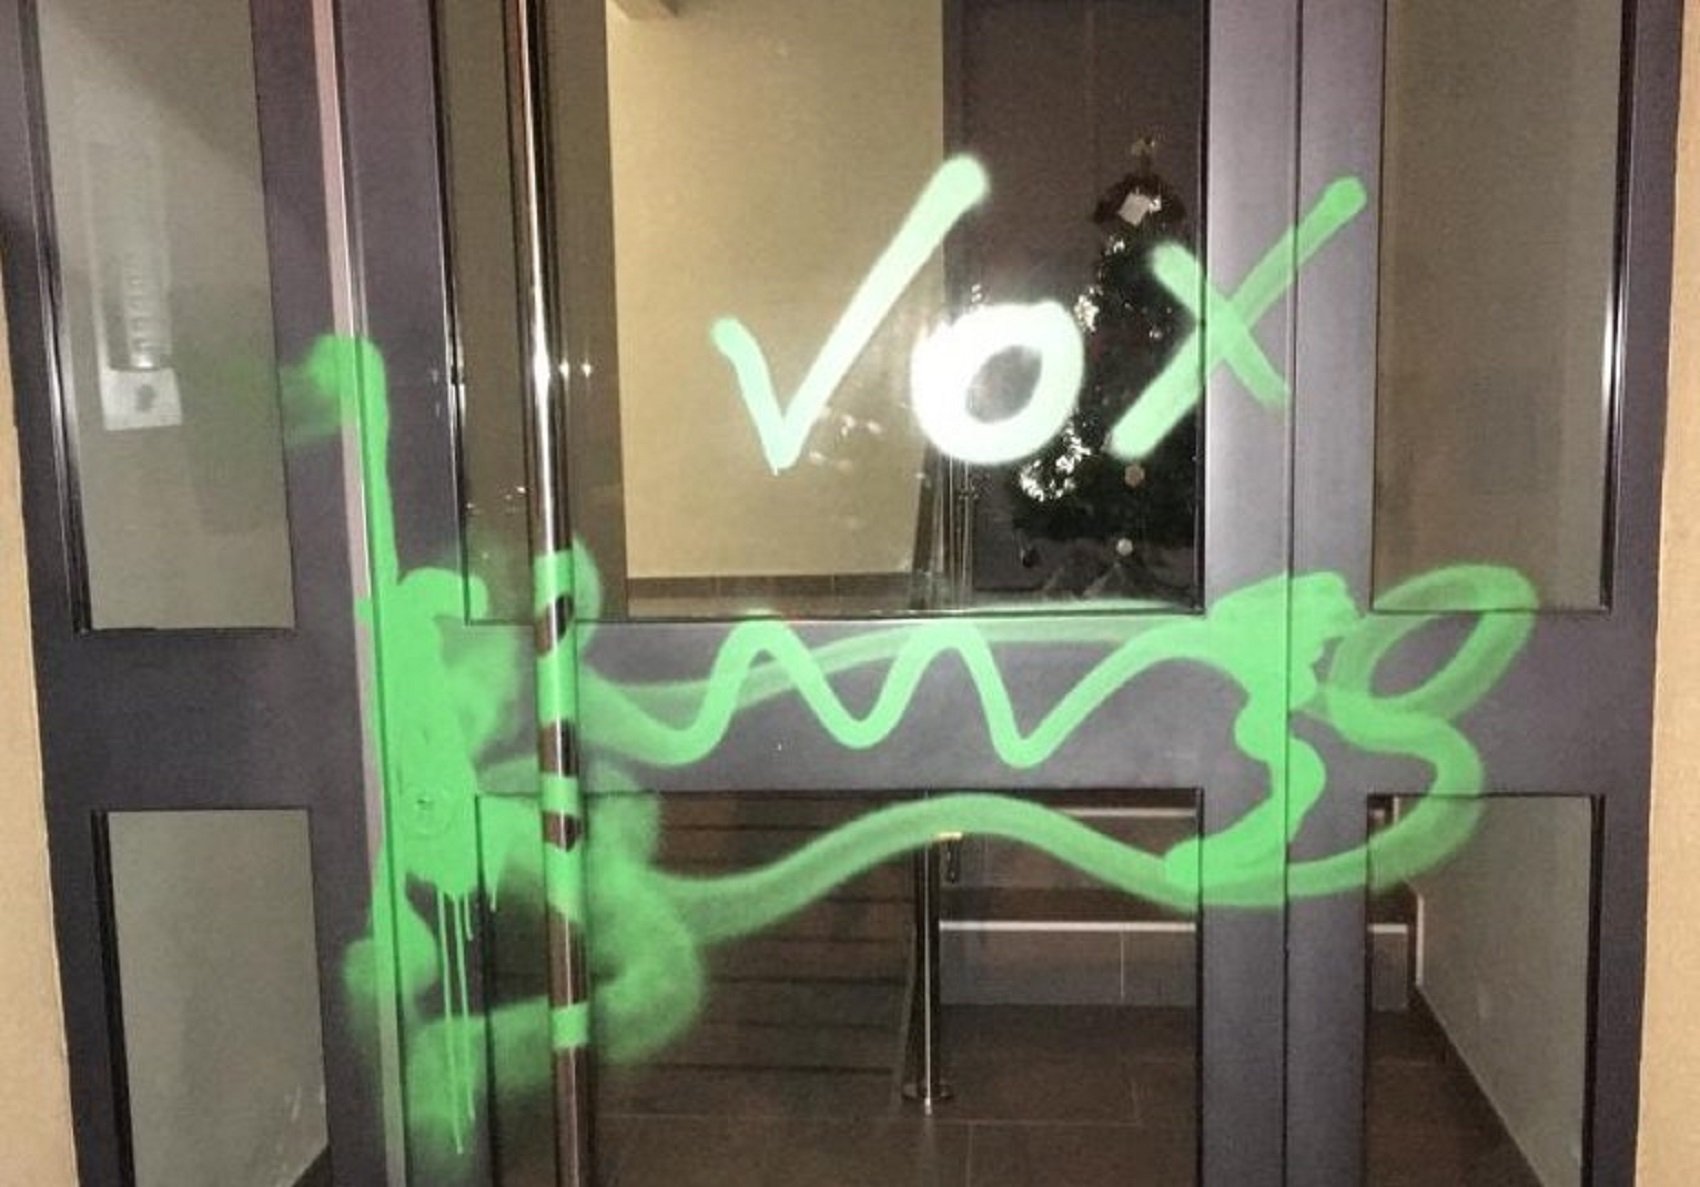 Vox "marca" el domicilio del alcalde de Vilassar de Dalt